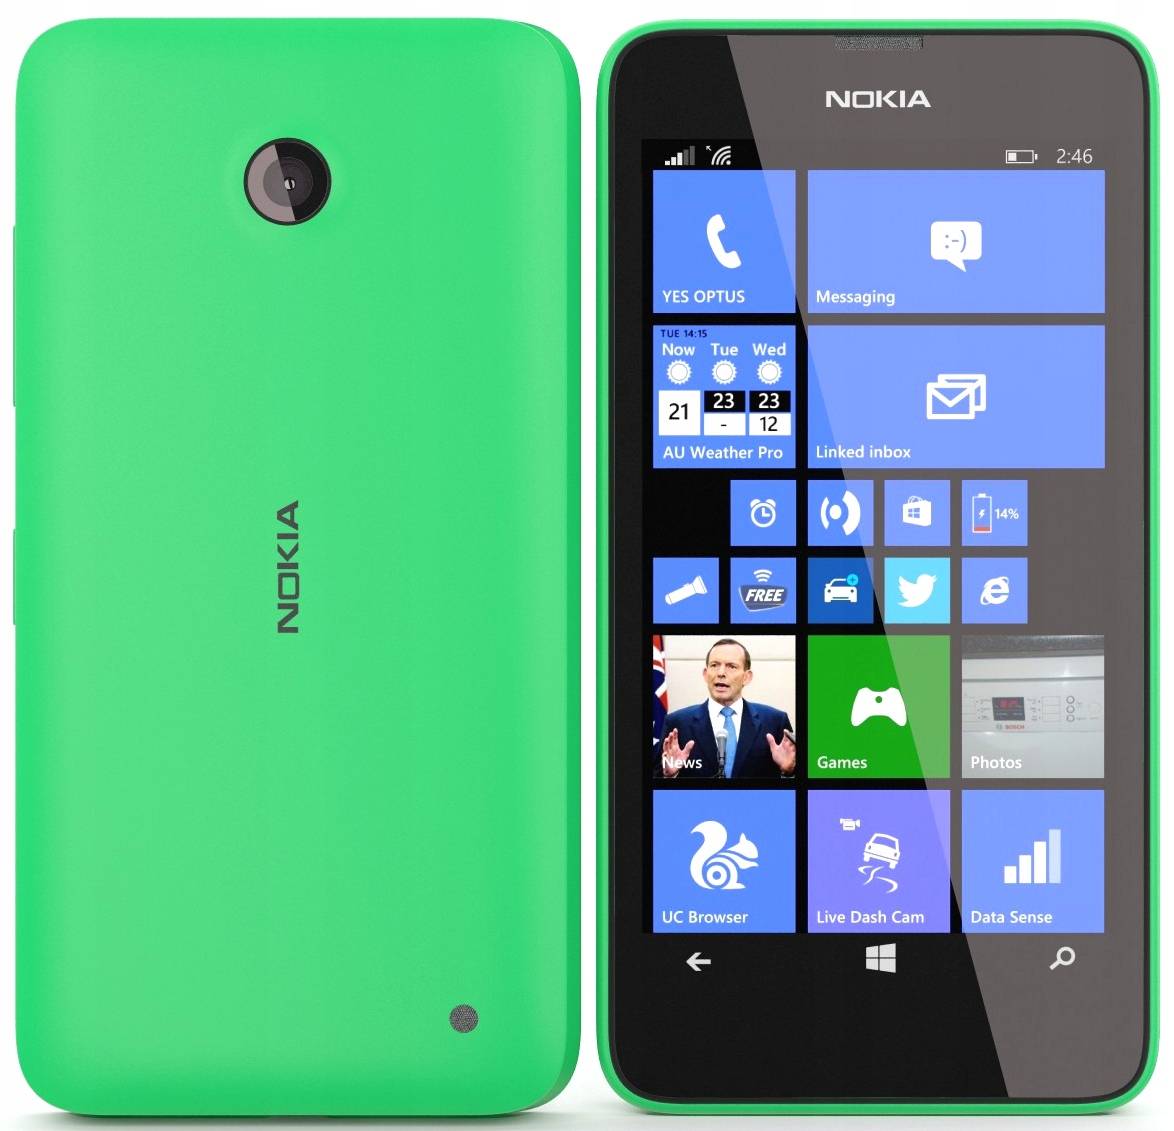 Тест-обзор смартфона nokia lumia 630